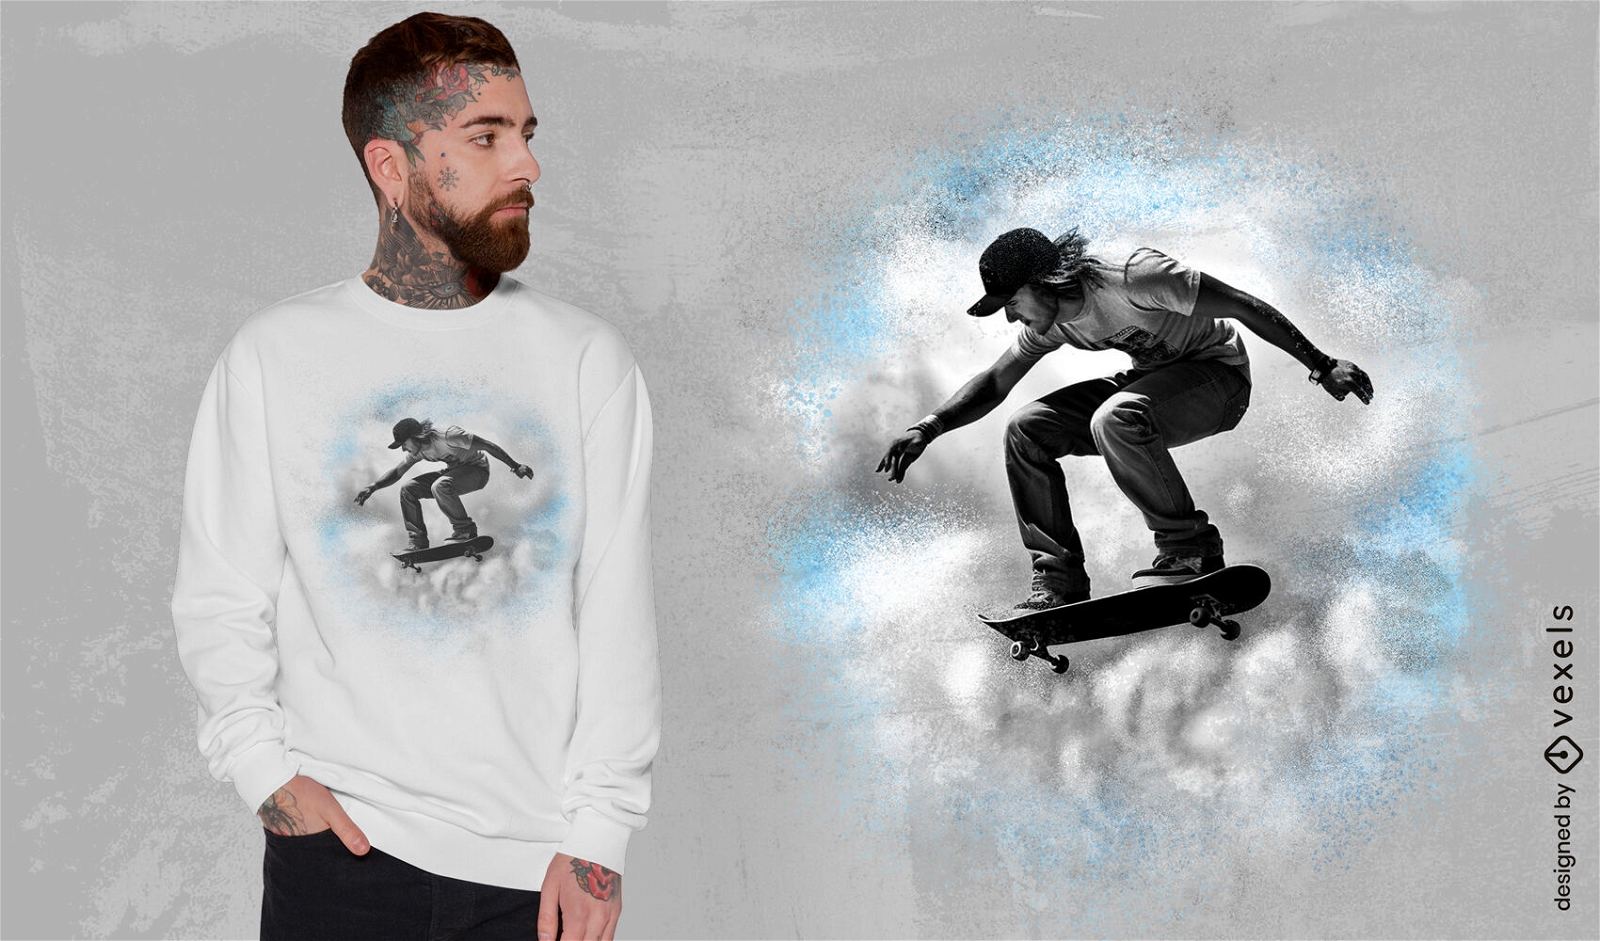 Design de camiseta para momento nublado de skate